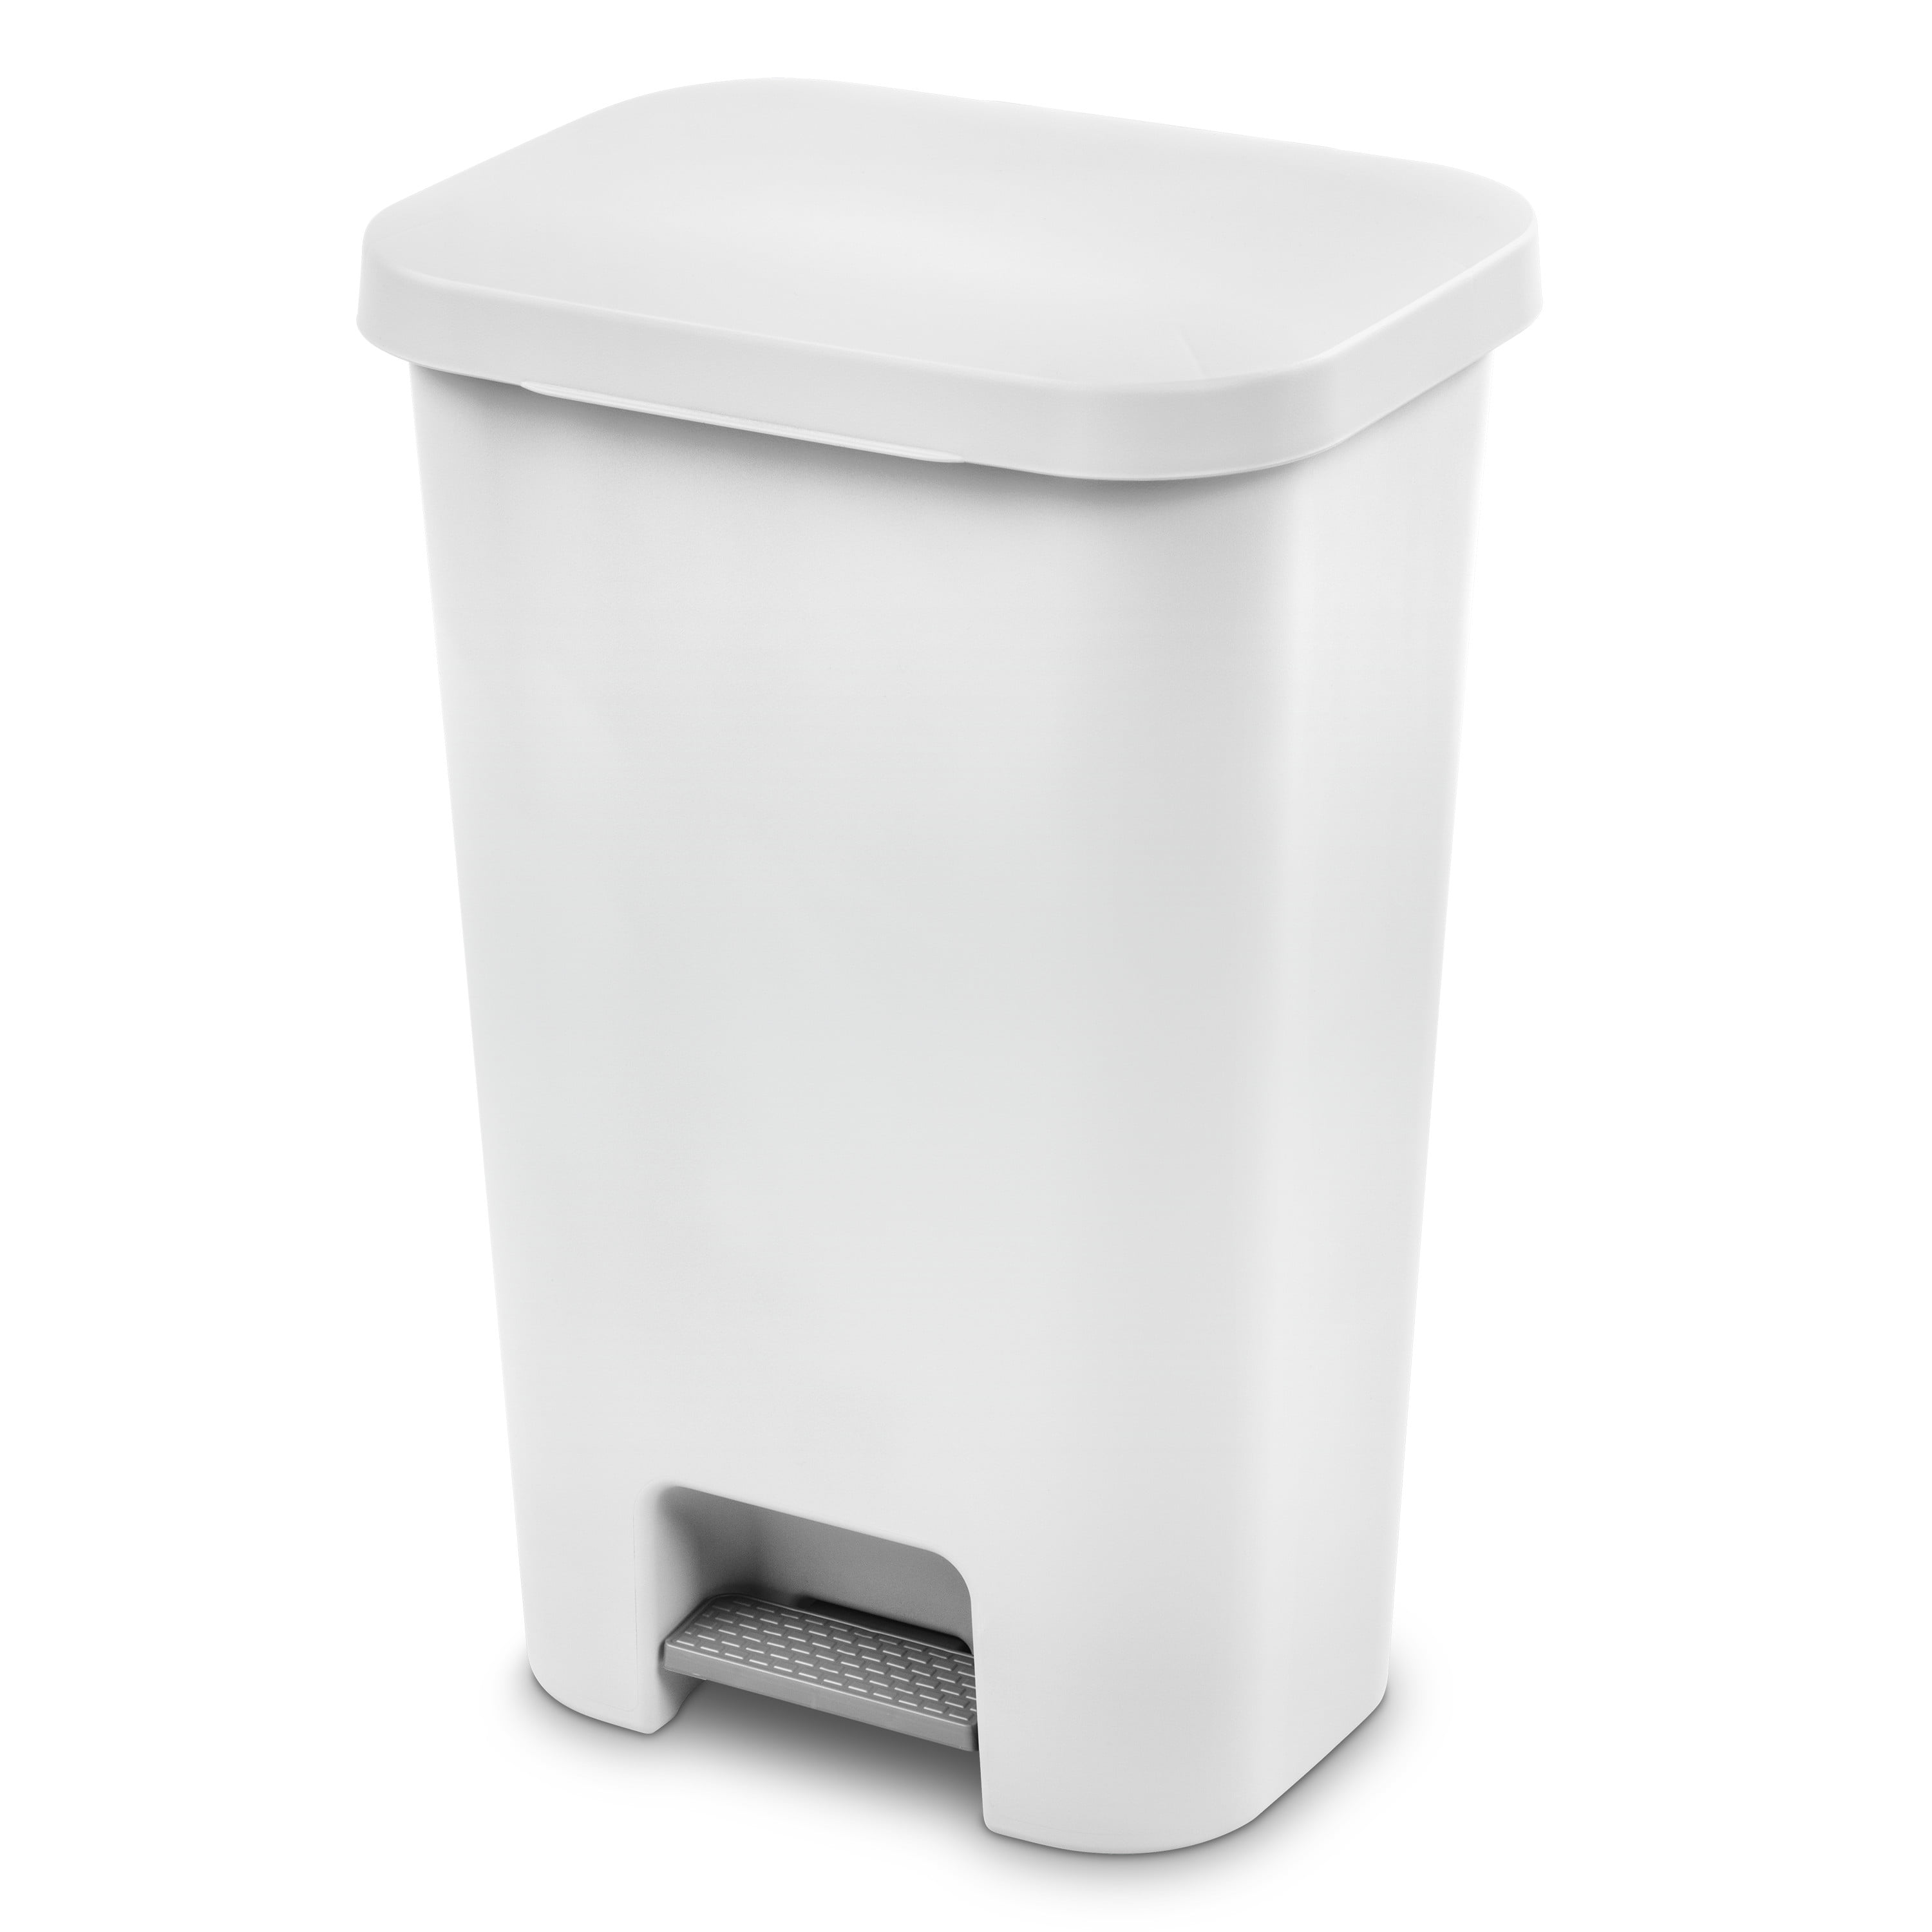 Sterilite 11.9 gal Plastic Step On Kitchen Trash Can, White